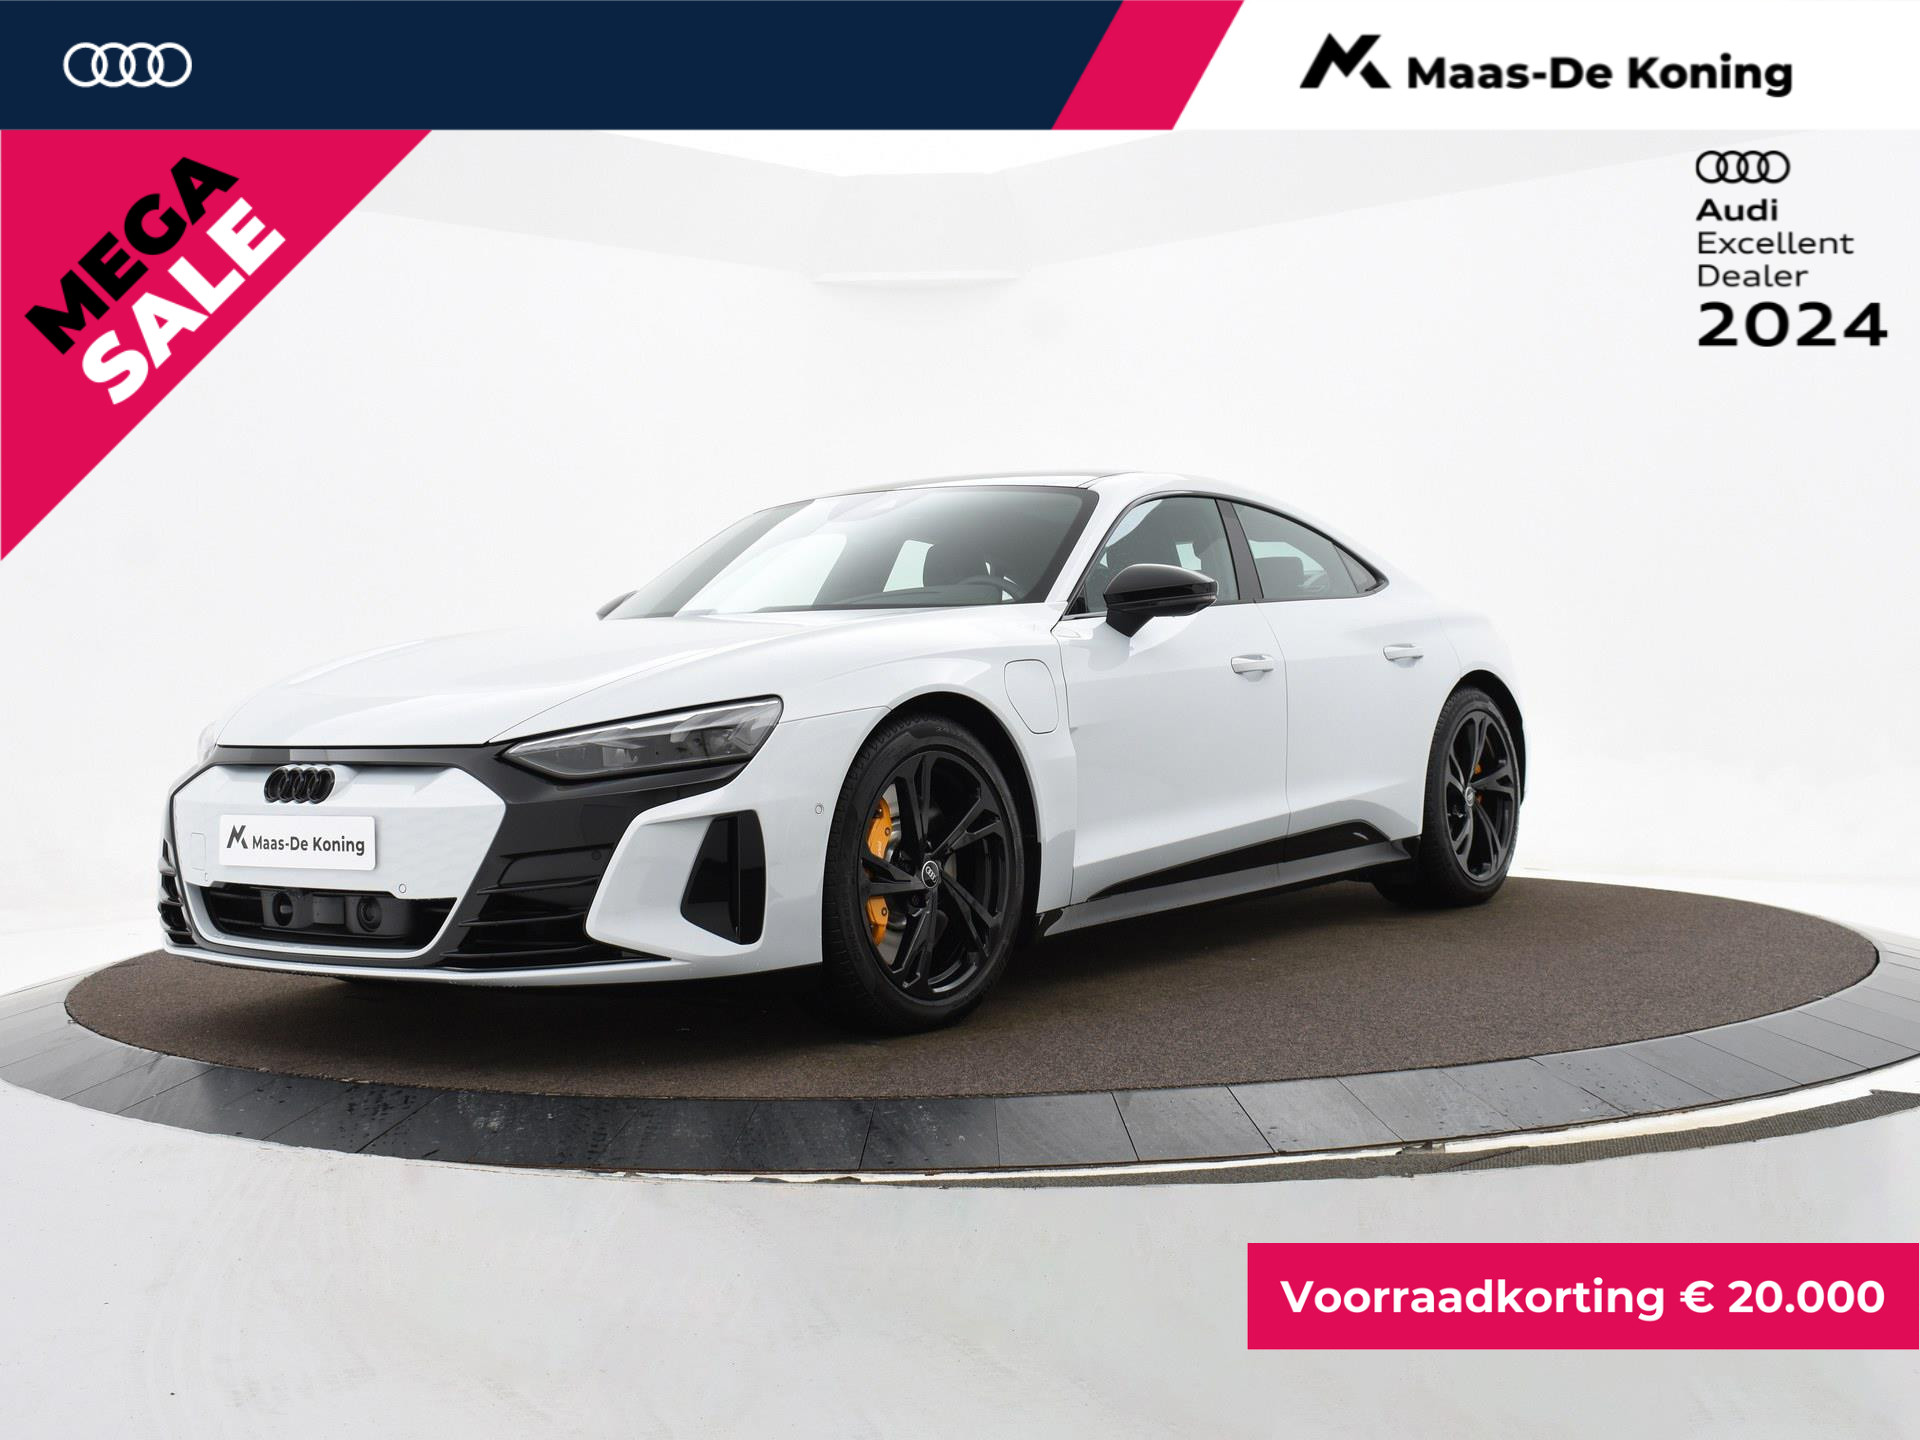 Audi e-tron GT 93 kWh/476PK · Elektrisch glazen panorama-dak · Lichtmetalen velgen 19" · Luchtvering · Voorraadkorting bij viaBOVAG.nl